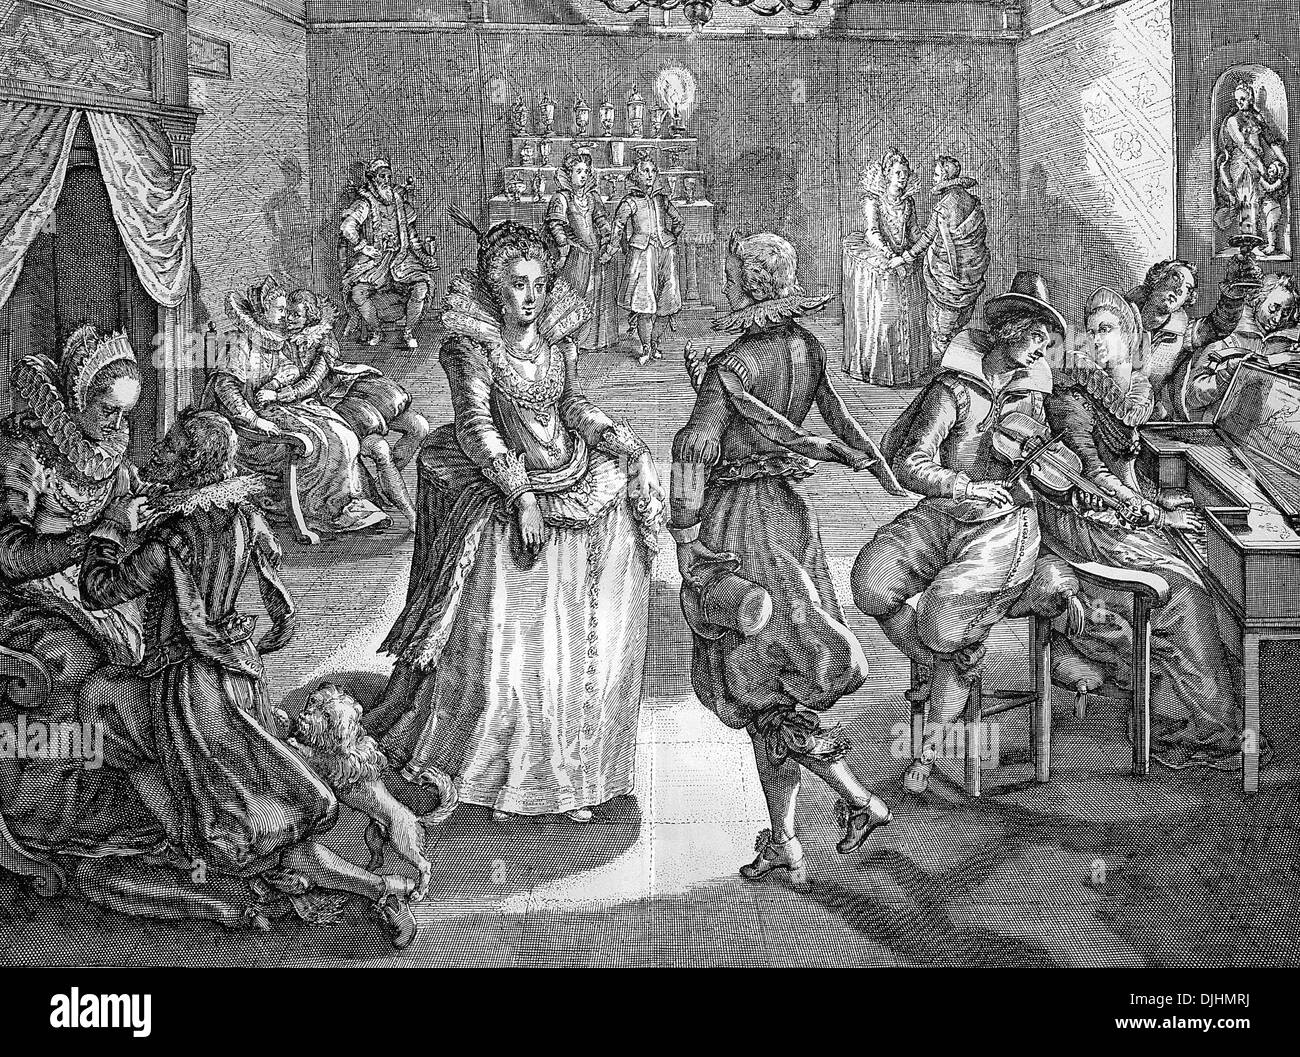 Le plaisir de la danse, gravure sur cuivre, 17e siècle Banque D'Images